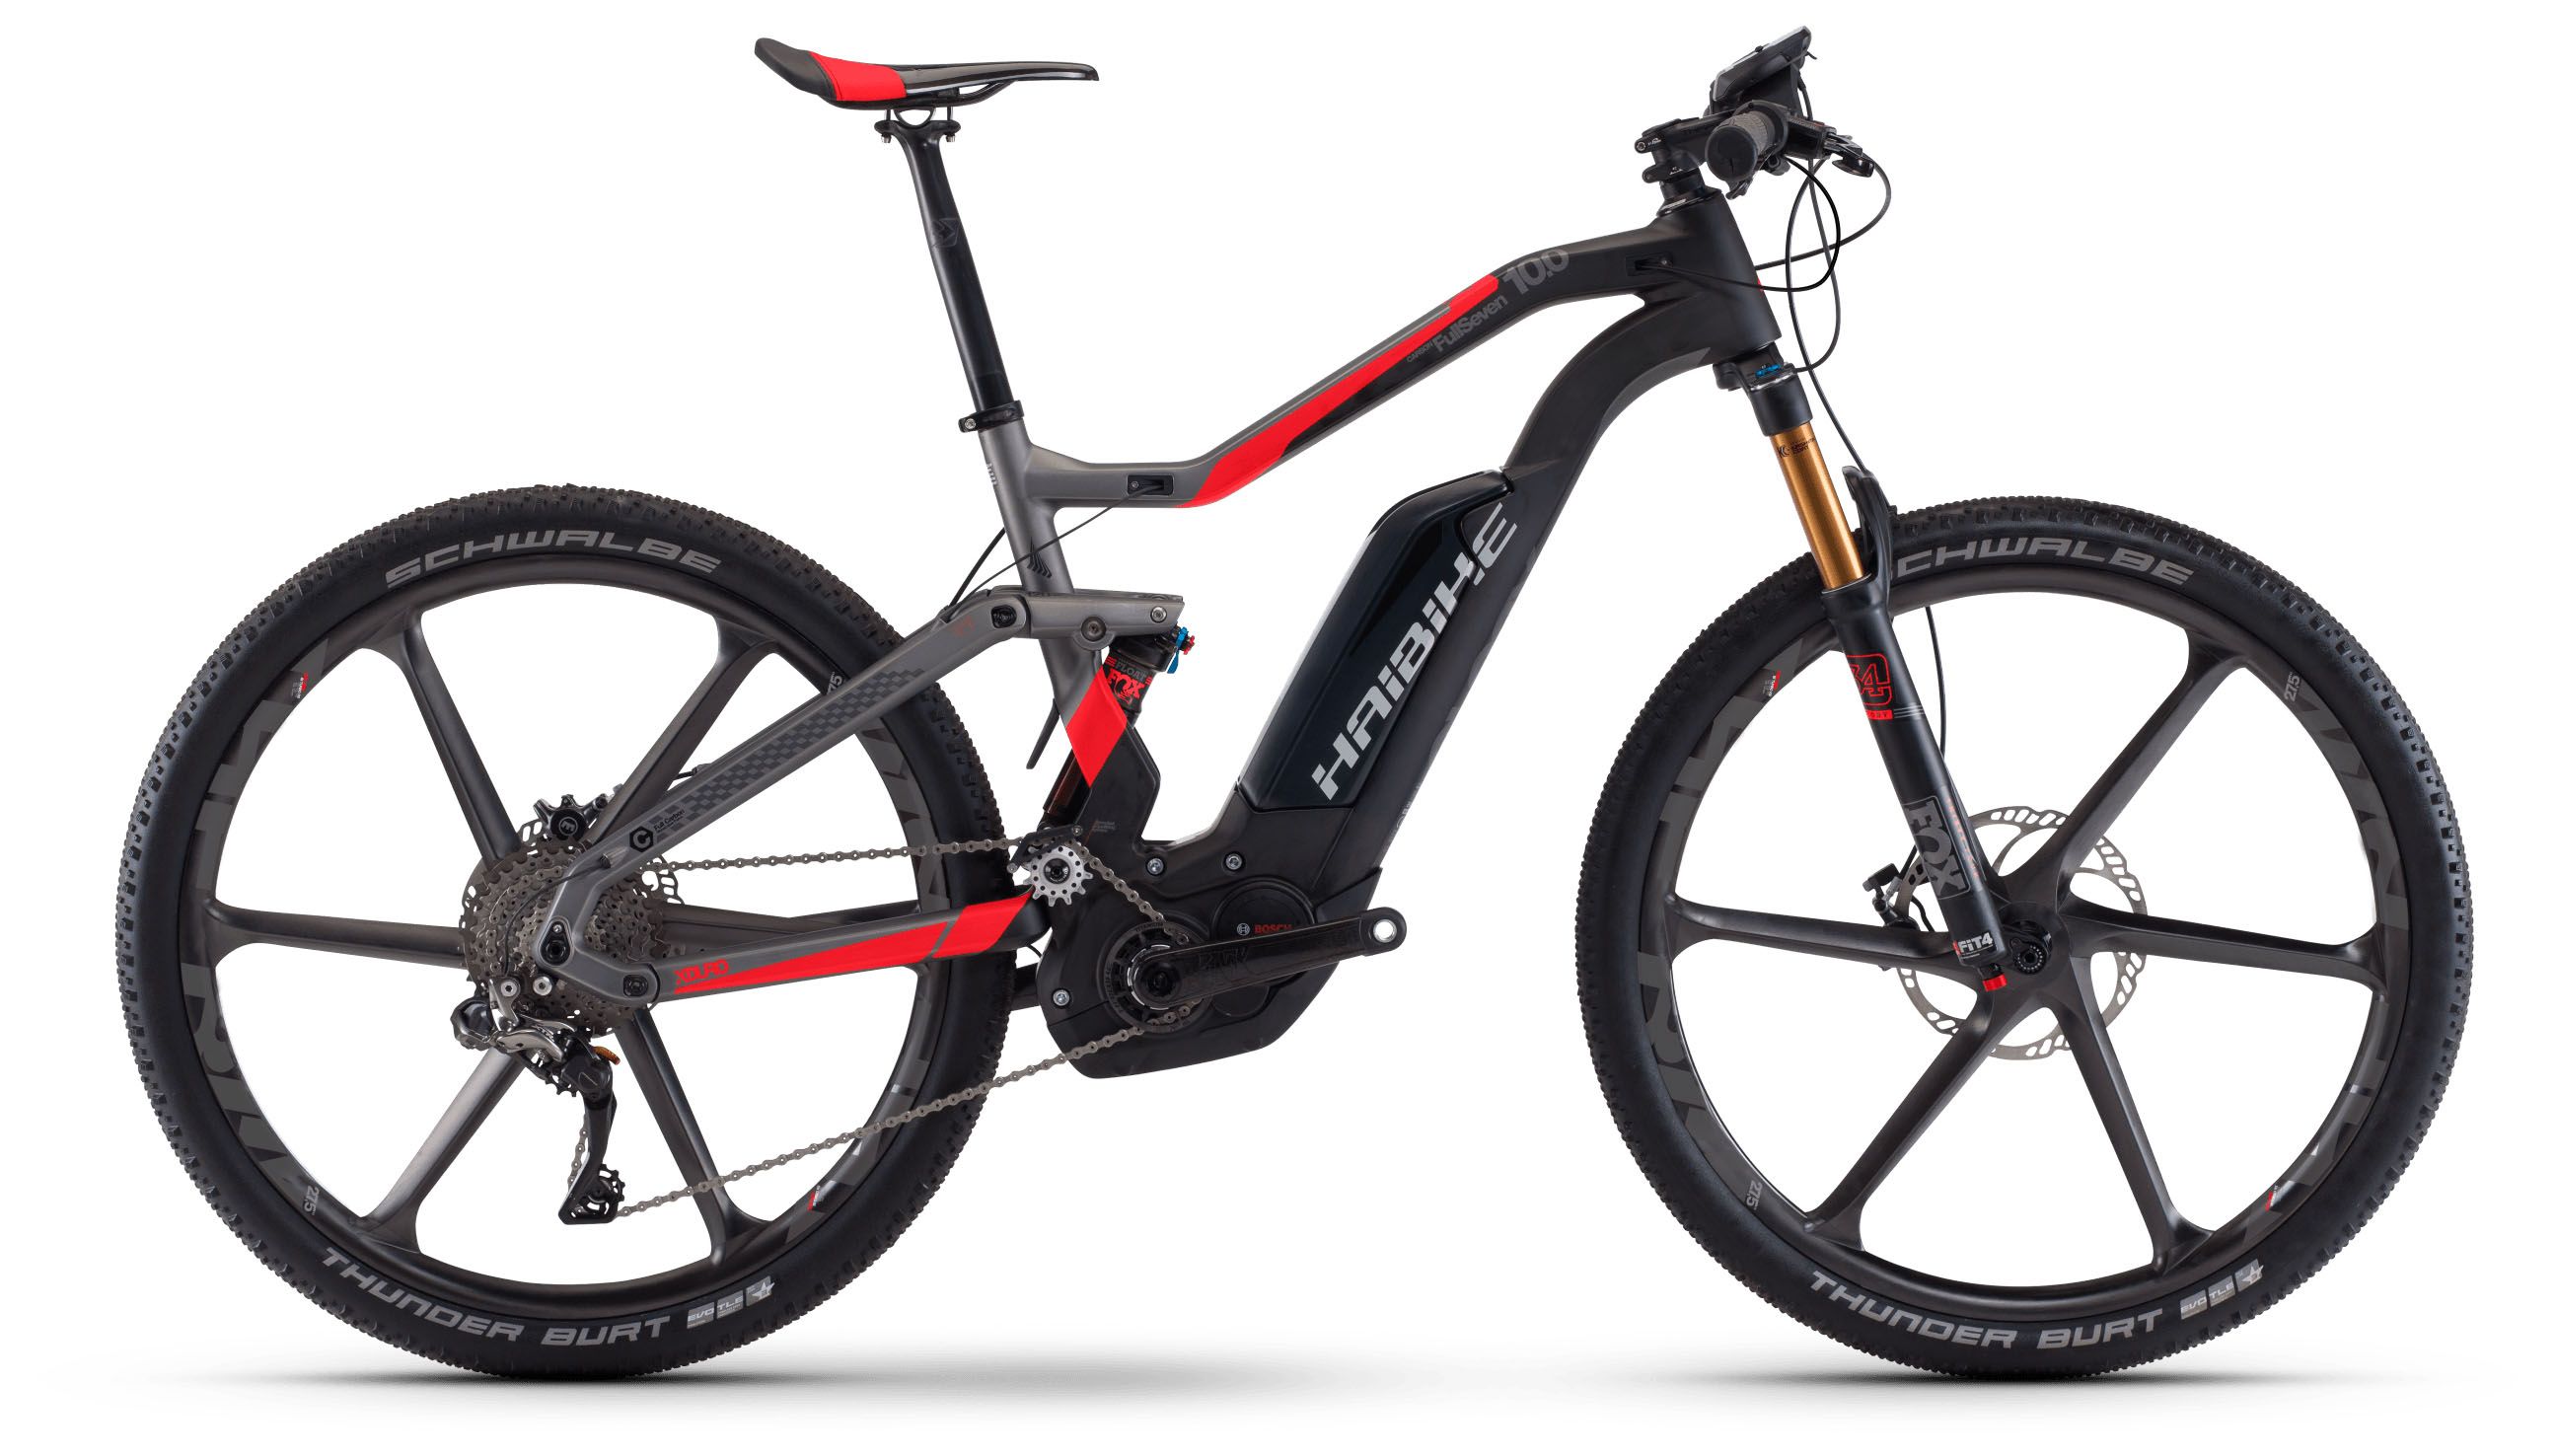  Отзывы о Горном велосипеде Haibike Xduro FullSeven Carbon 10.0 500Wh 2017